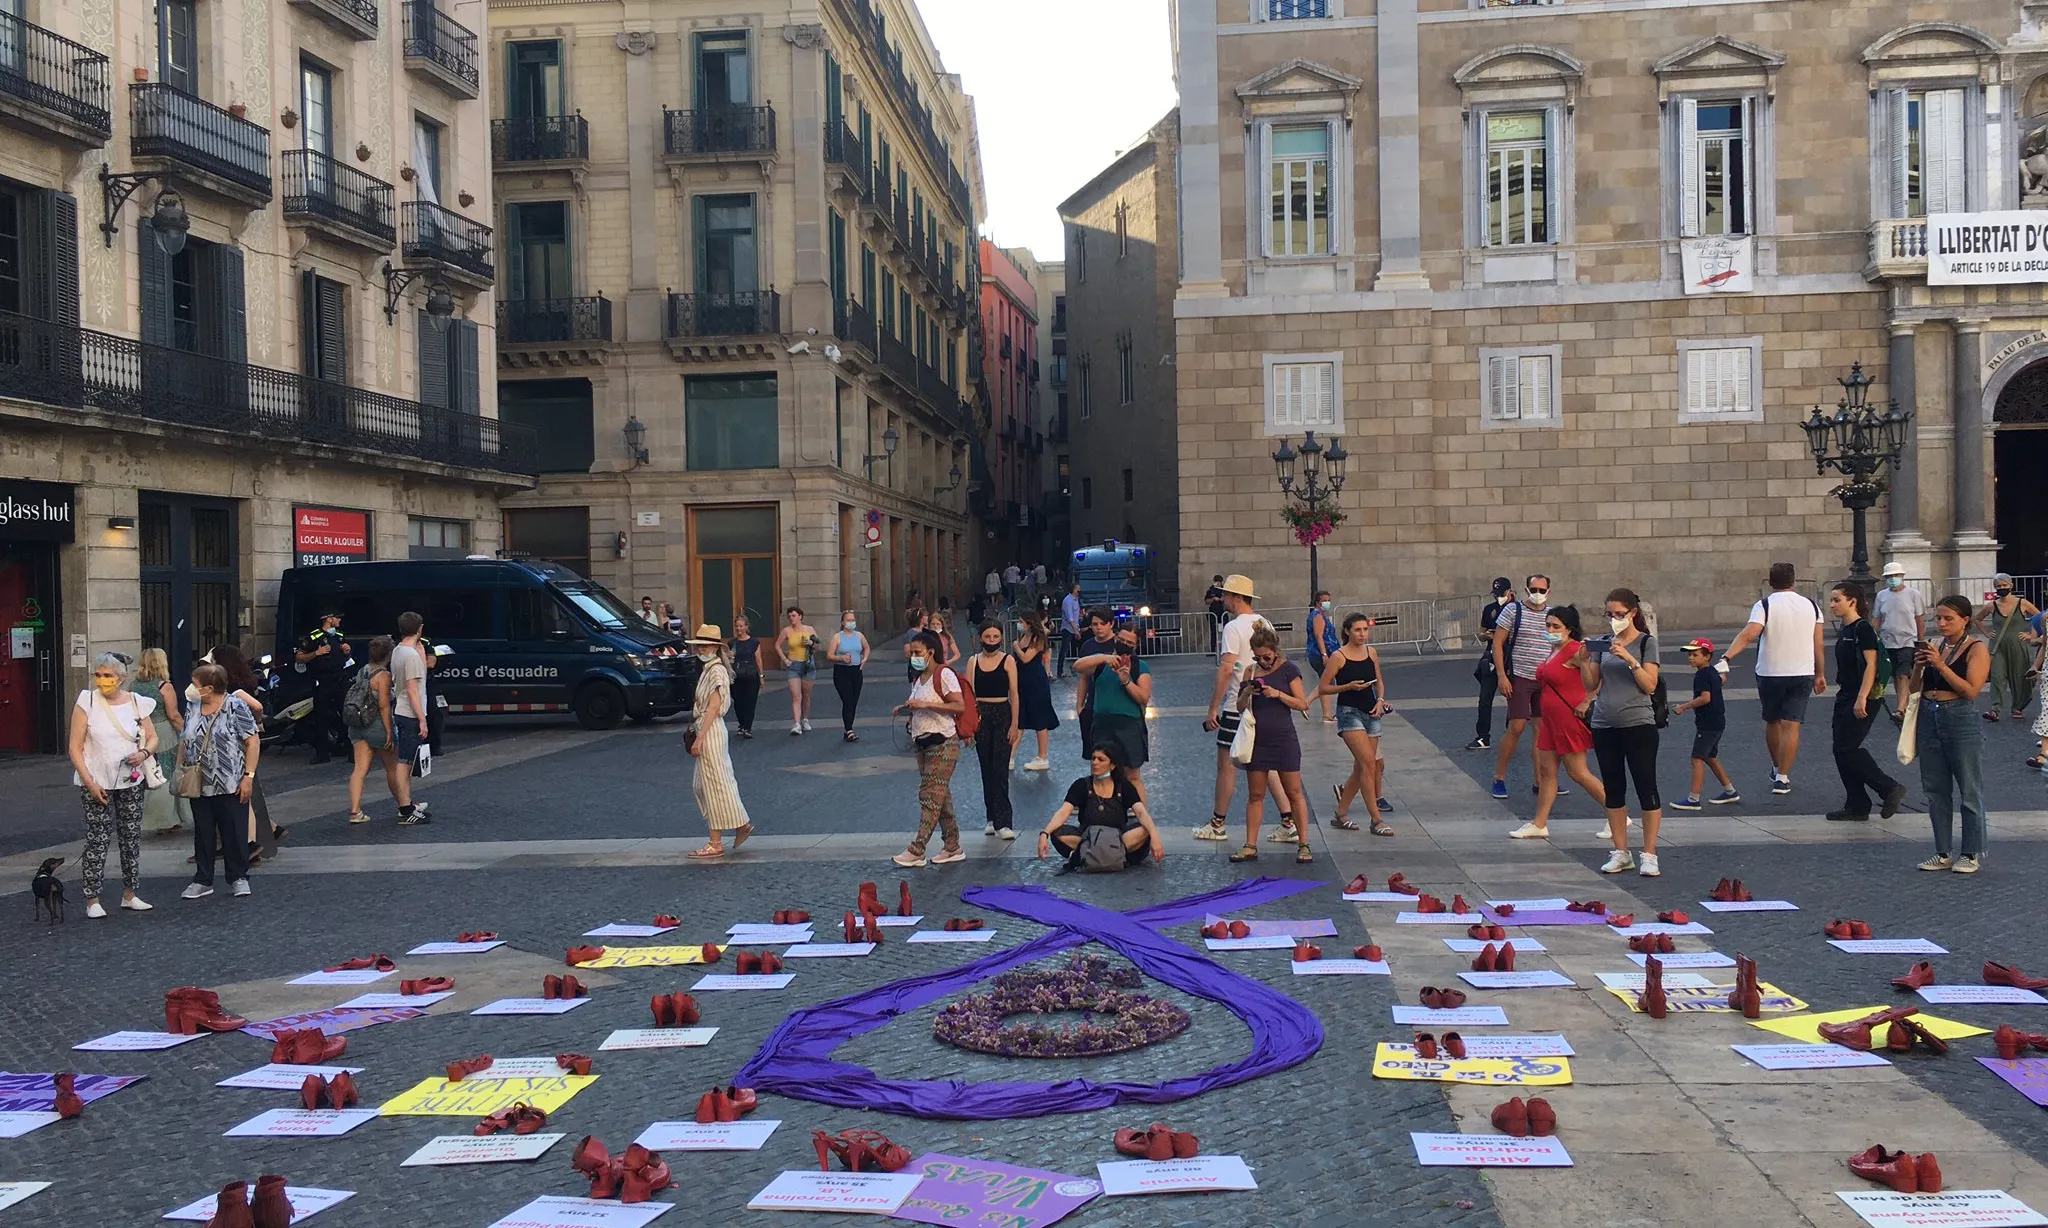 Concentració del 19 de juliol a la plaça de Sant Jaume de Barcelona contra els feminicidis convocada per la Plataforma Unitària contra les Violències de Gènere.